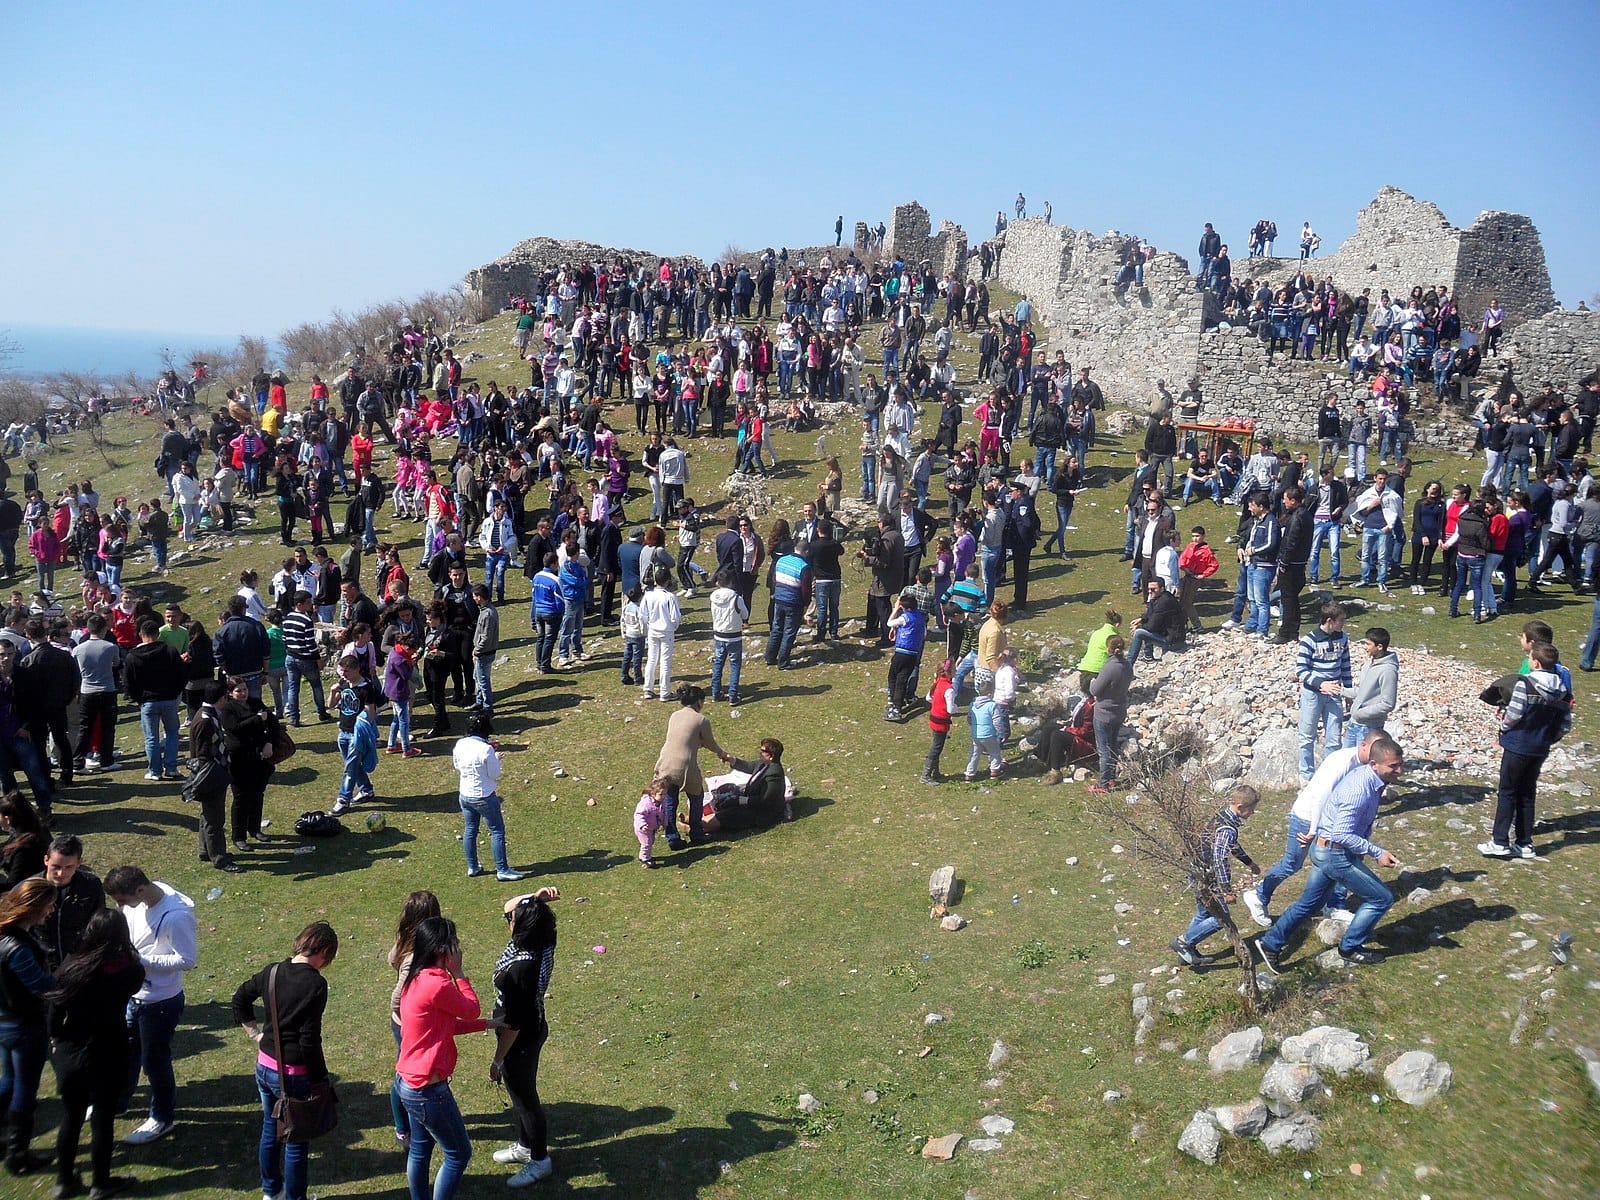 Ежегодный праздник Дита-э-Верес, который имеет огромное значение в албанской культуре